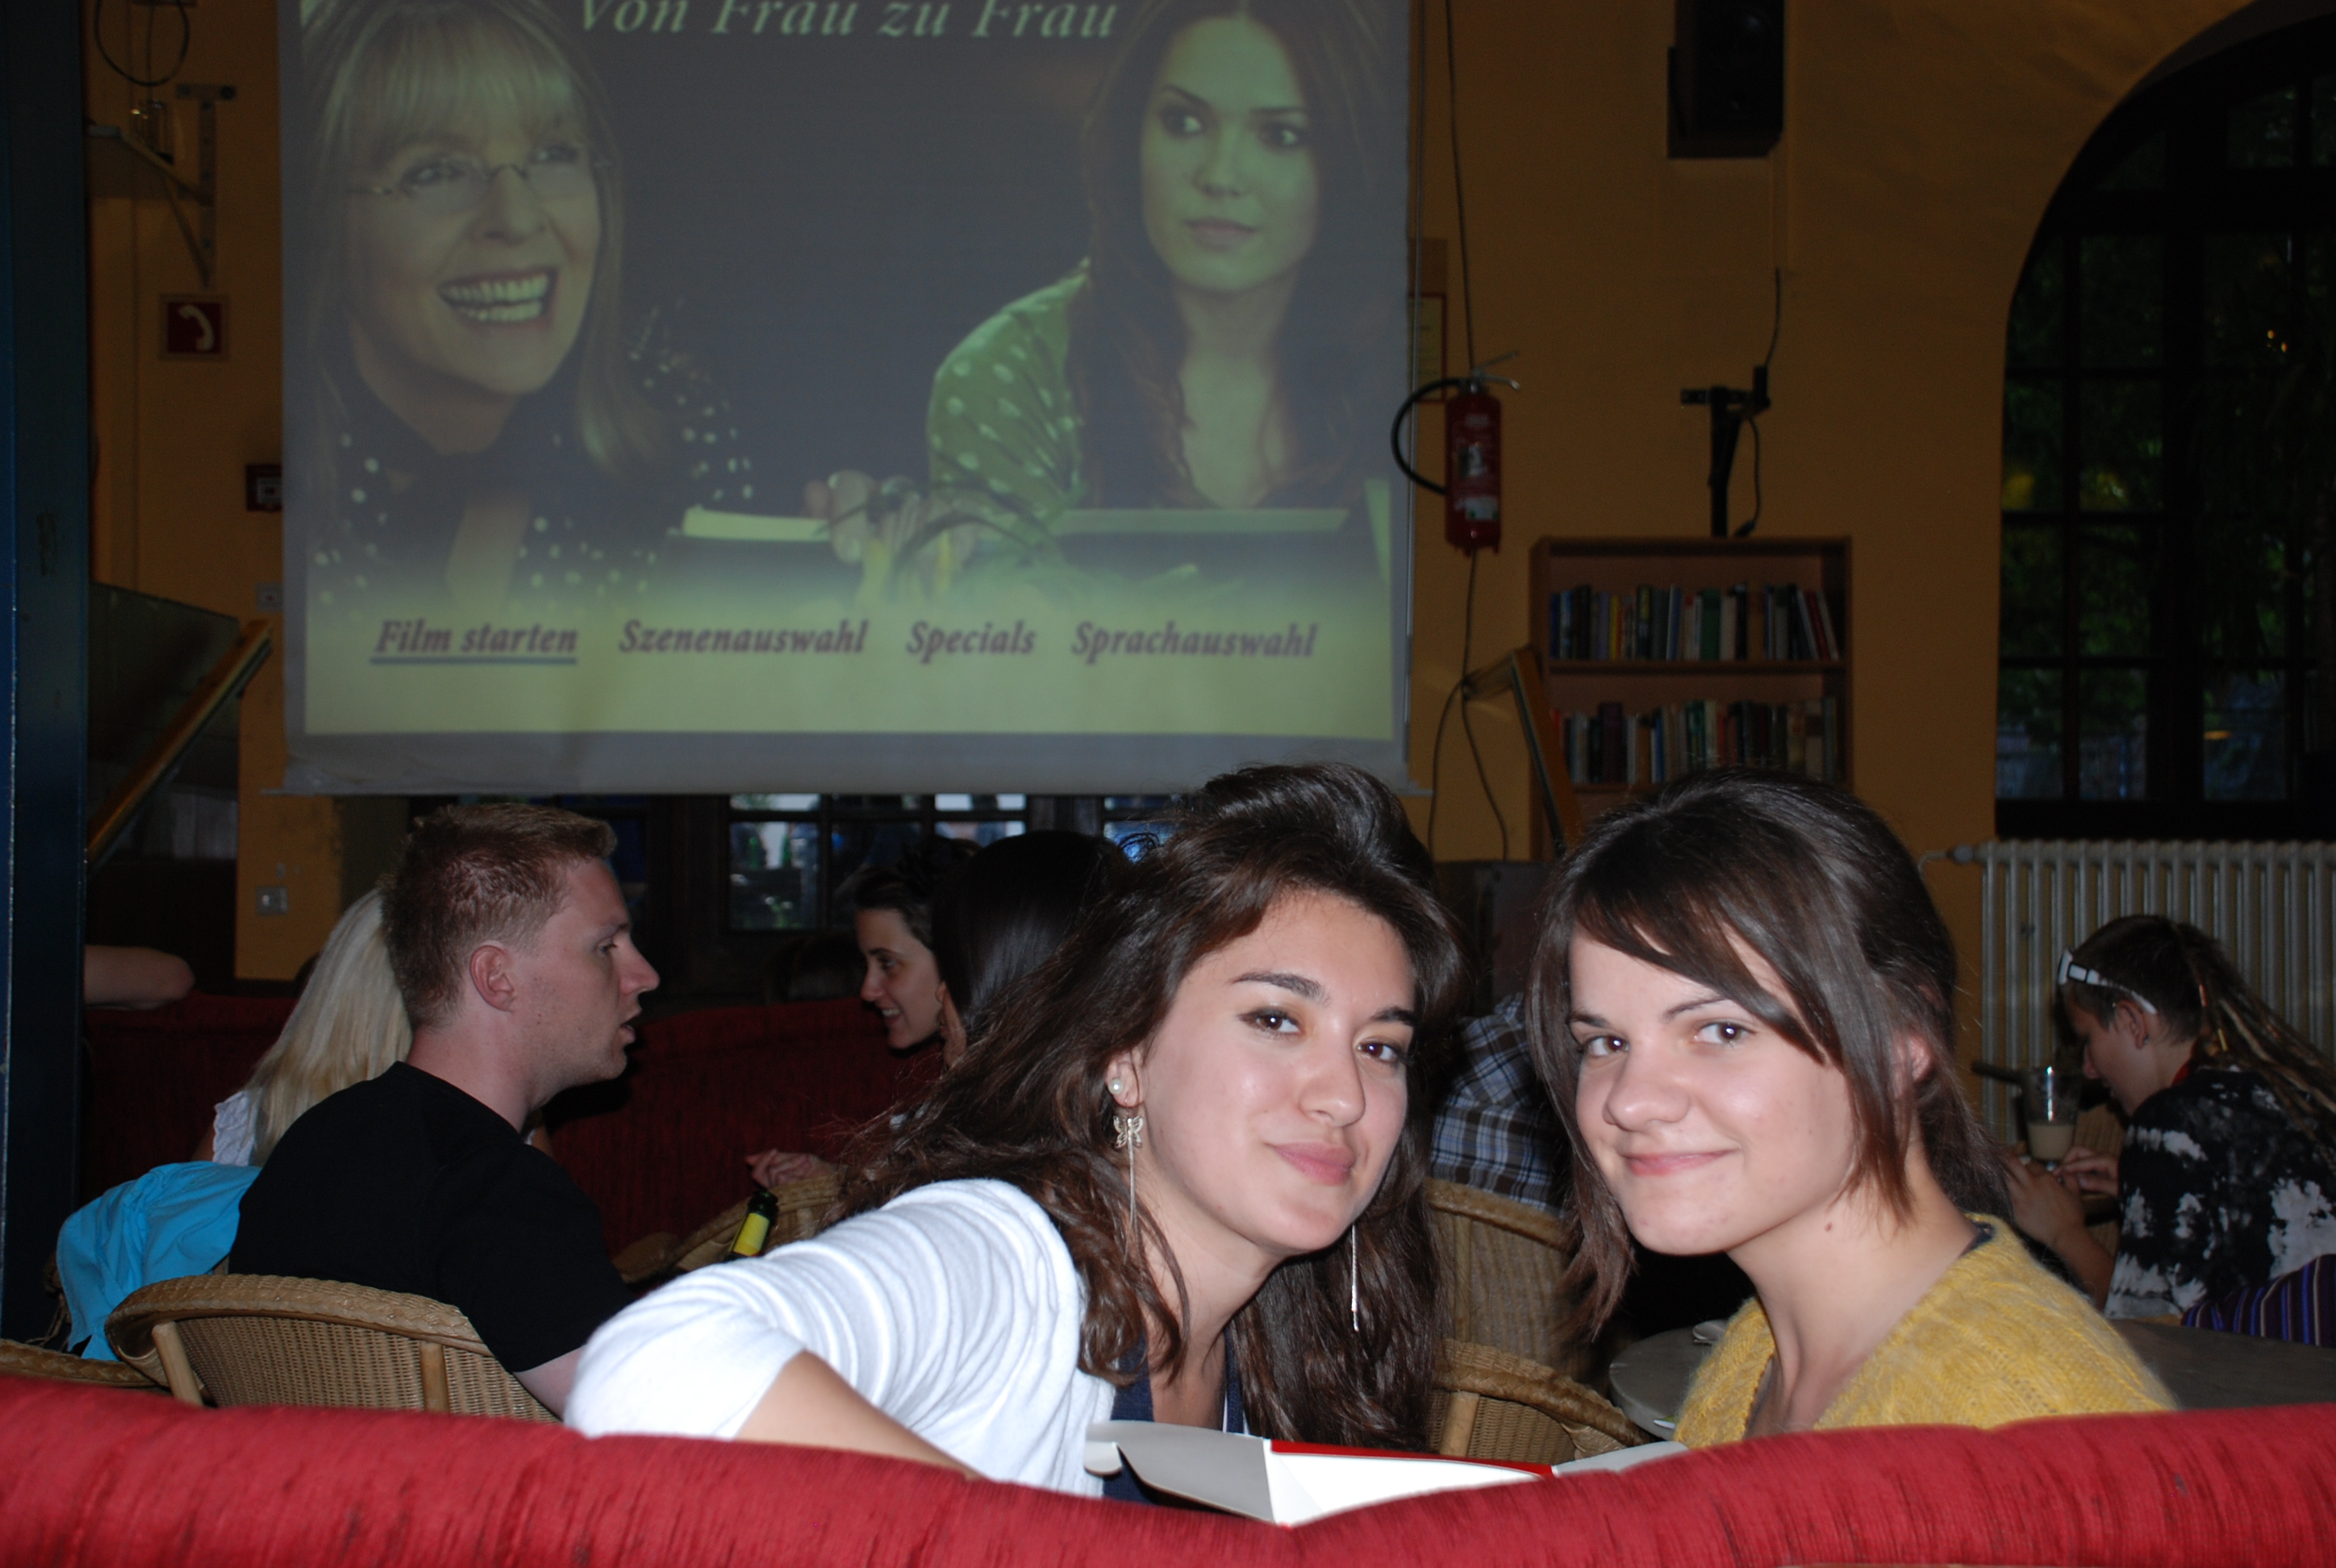 Zwei Mädels sitzen in einem Studentenclub auf einem Sofa. Hinter ihnen hängt eine große Leinwand auf der ein Film "Von Frau zu Frau" gezeigt wird.